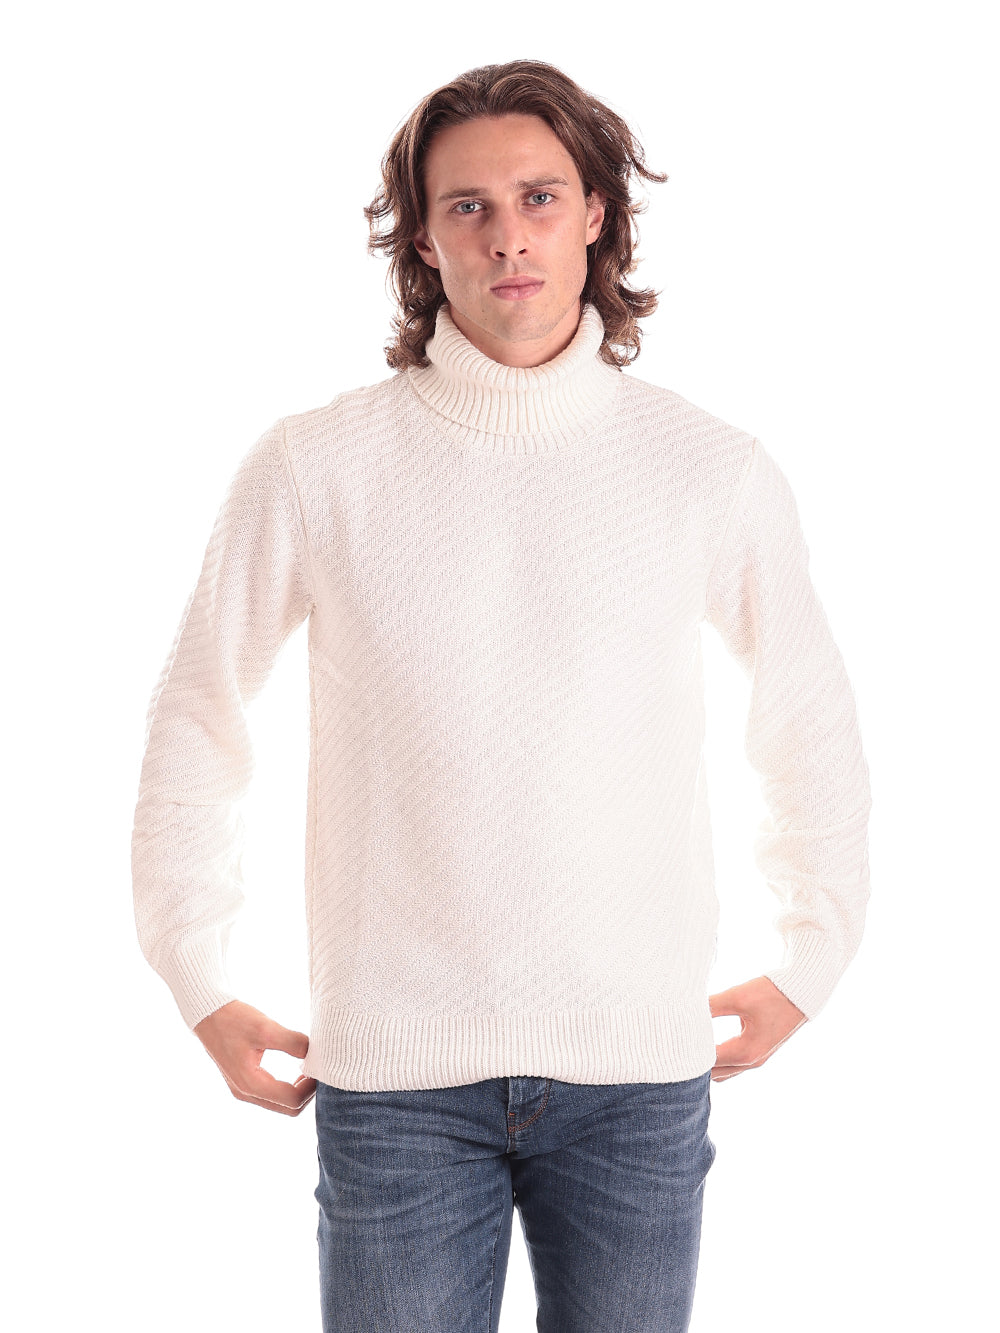 6lzm1l White sweater